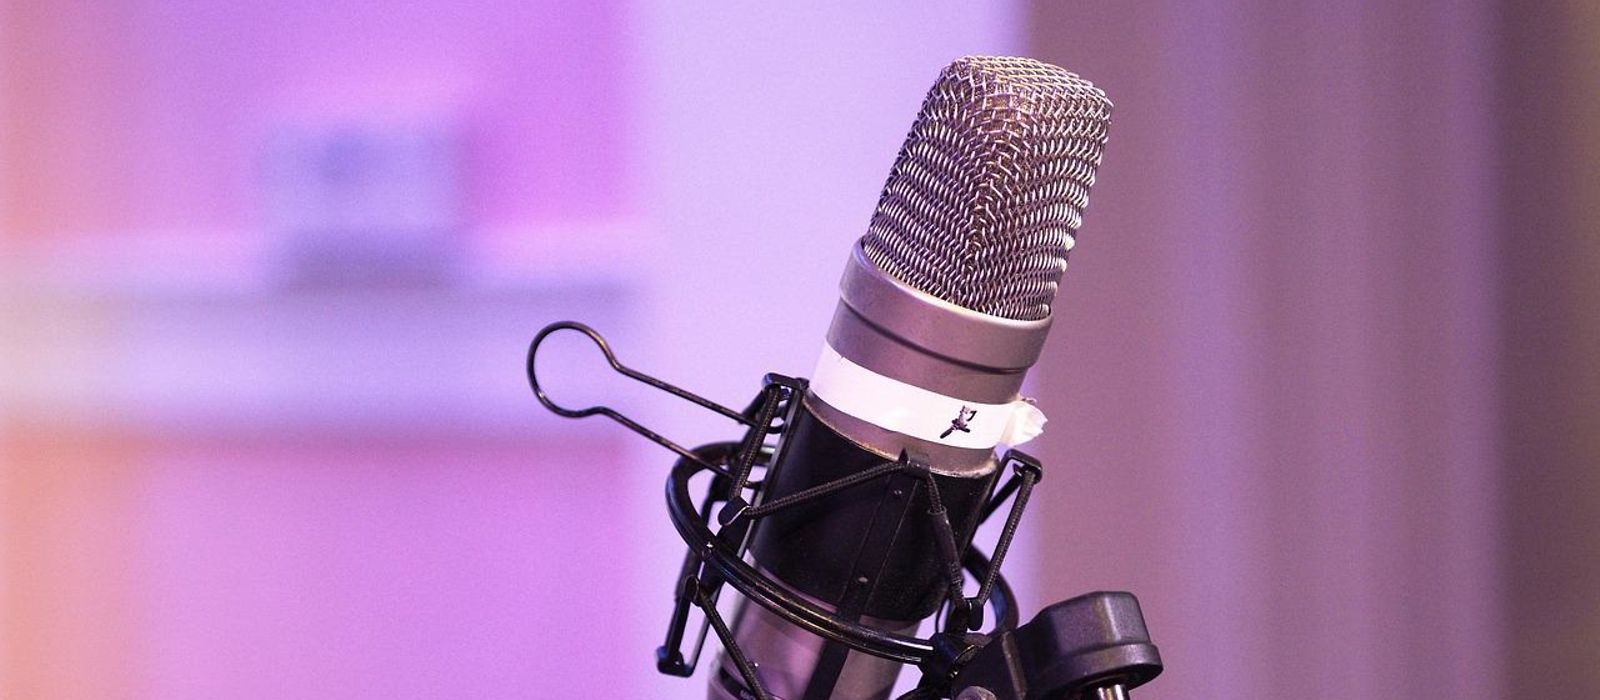 Mikrofon auf Mikrofonständer, lila Hintertergrund